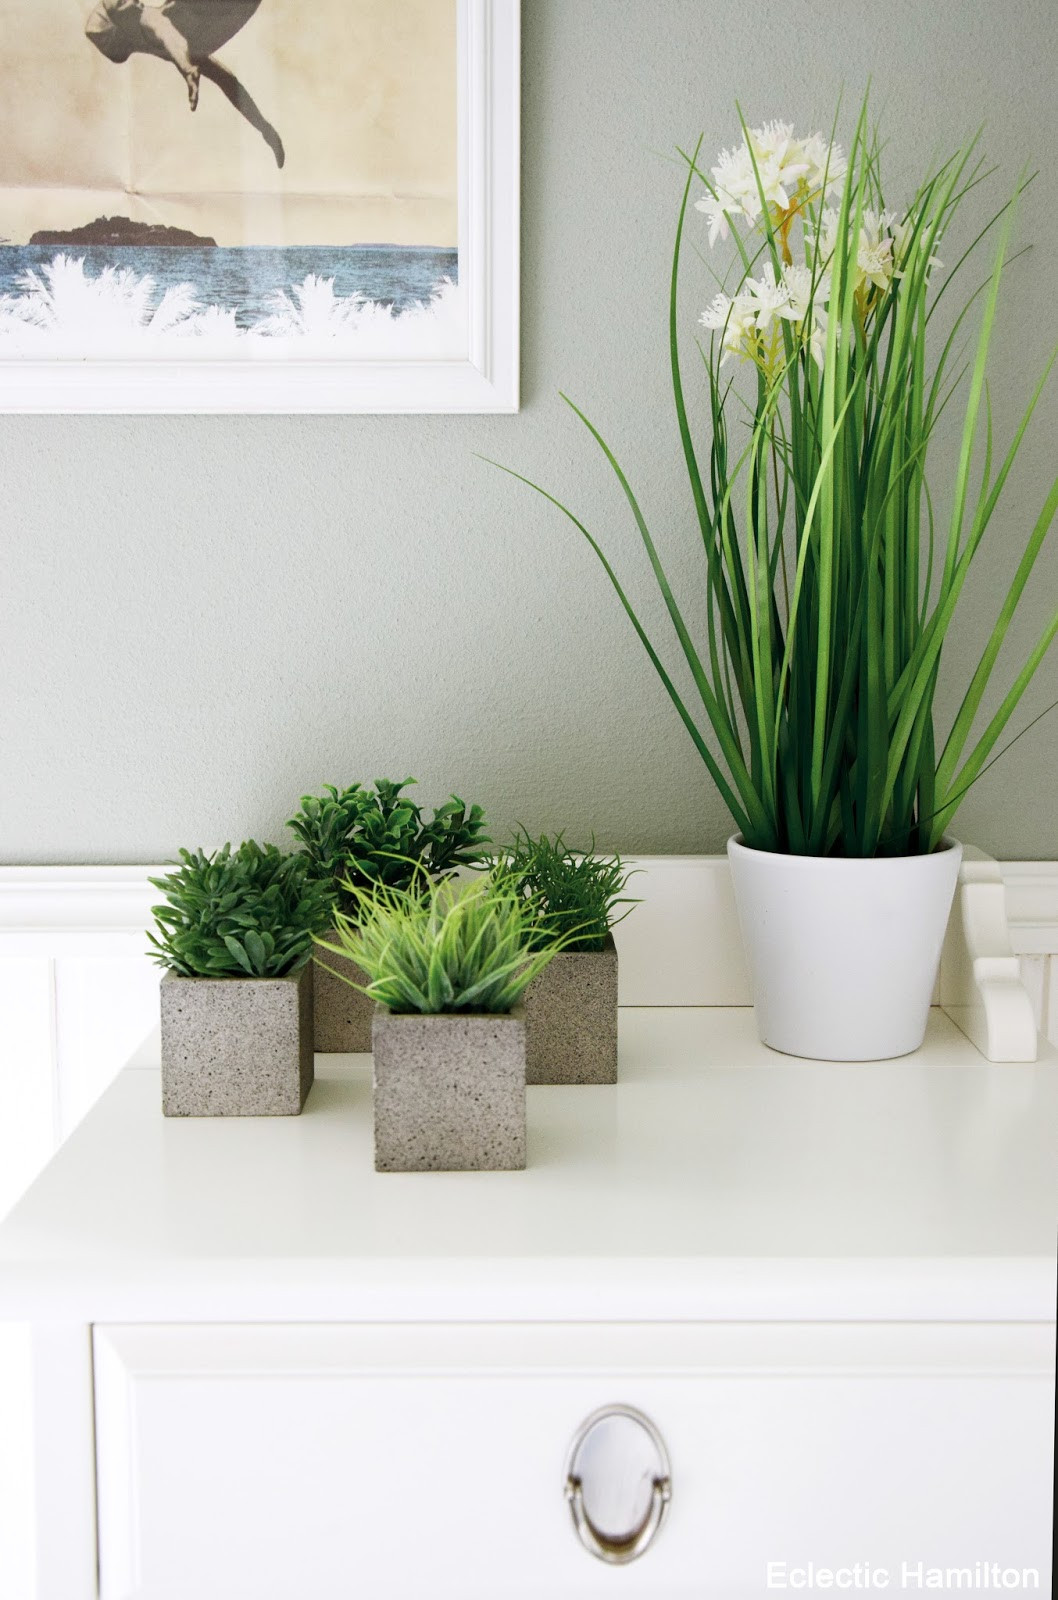 Badezimmer Pflanzen
 Pflanzen für mein Badezimmer und Einblicke endlich